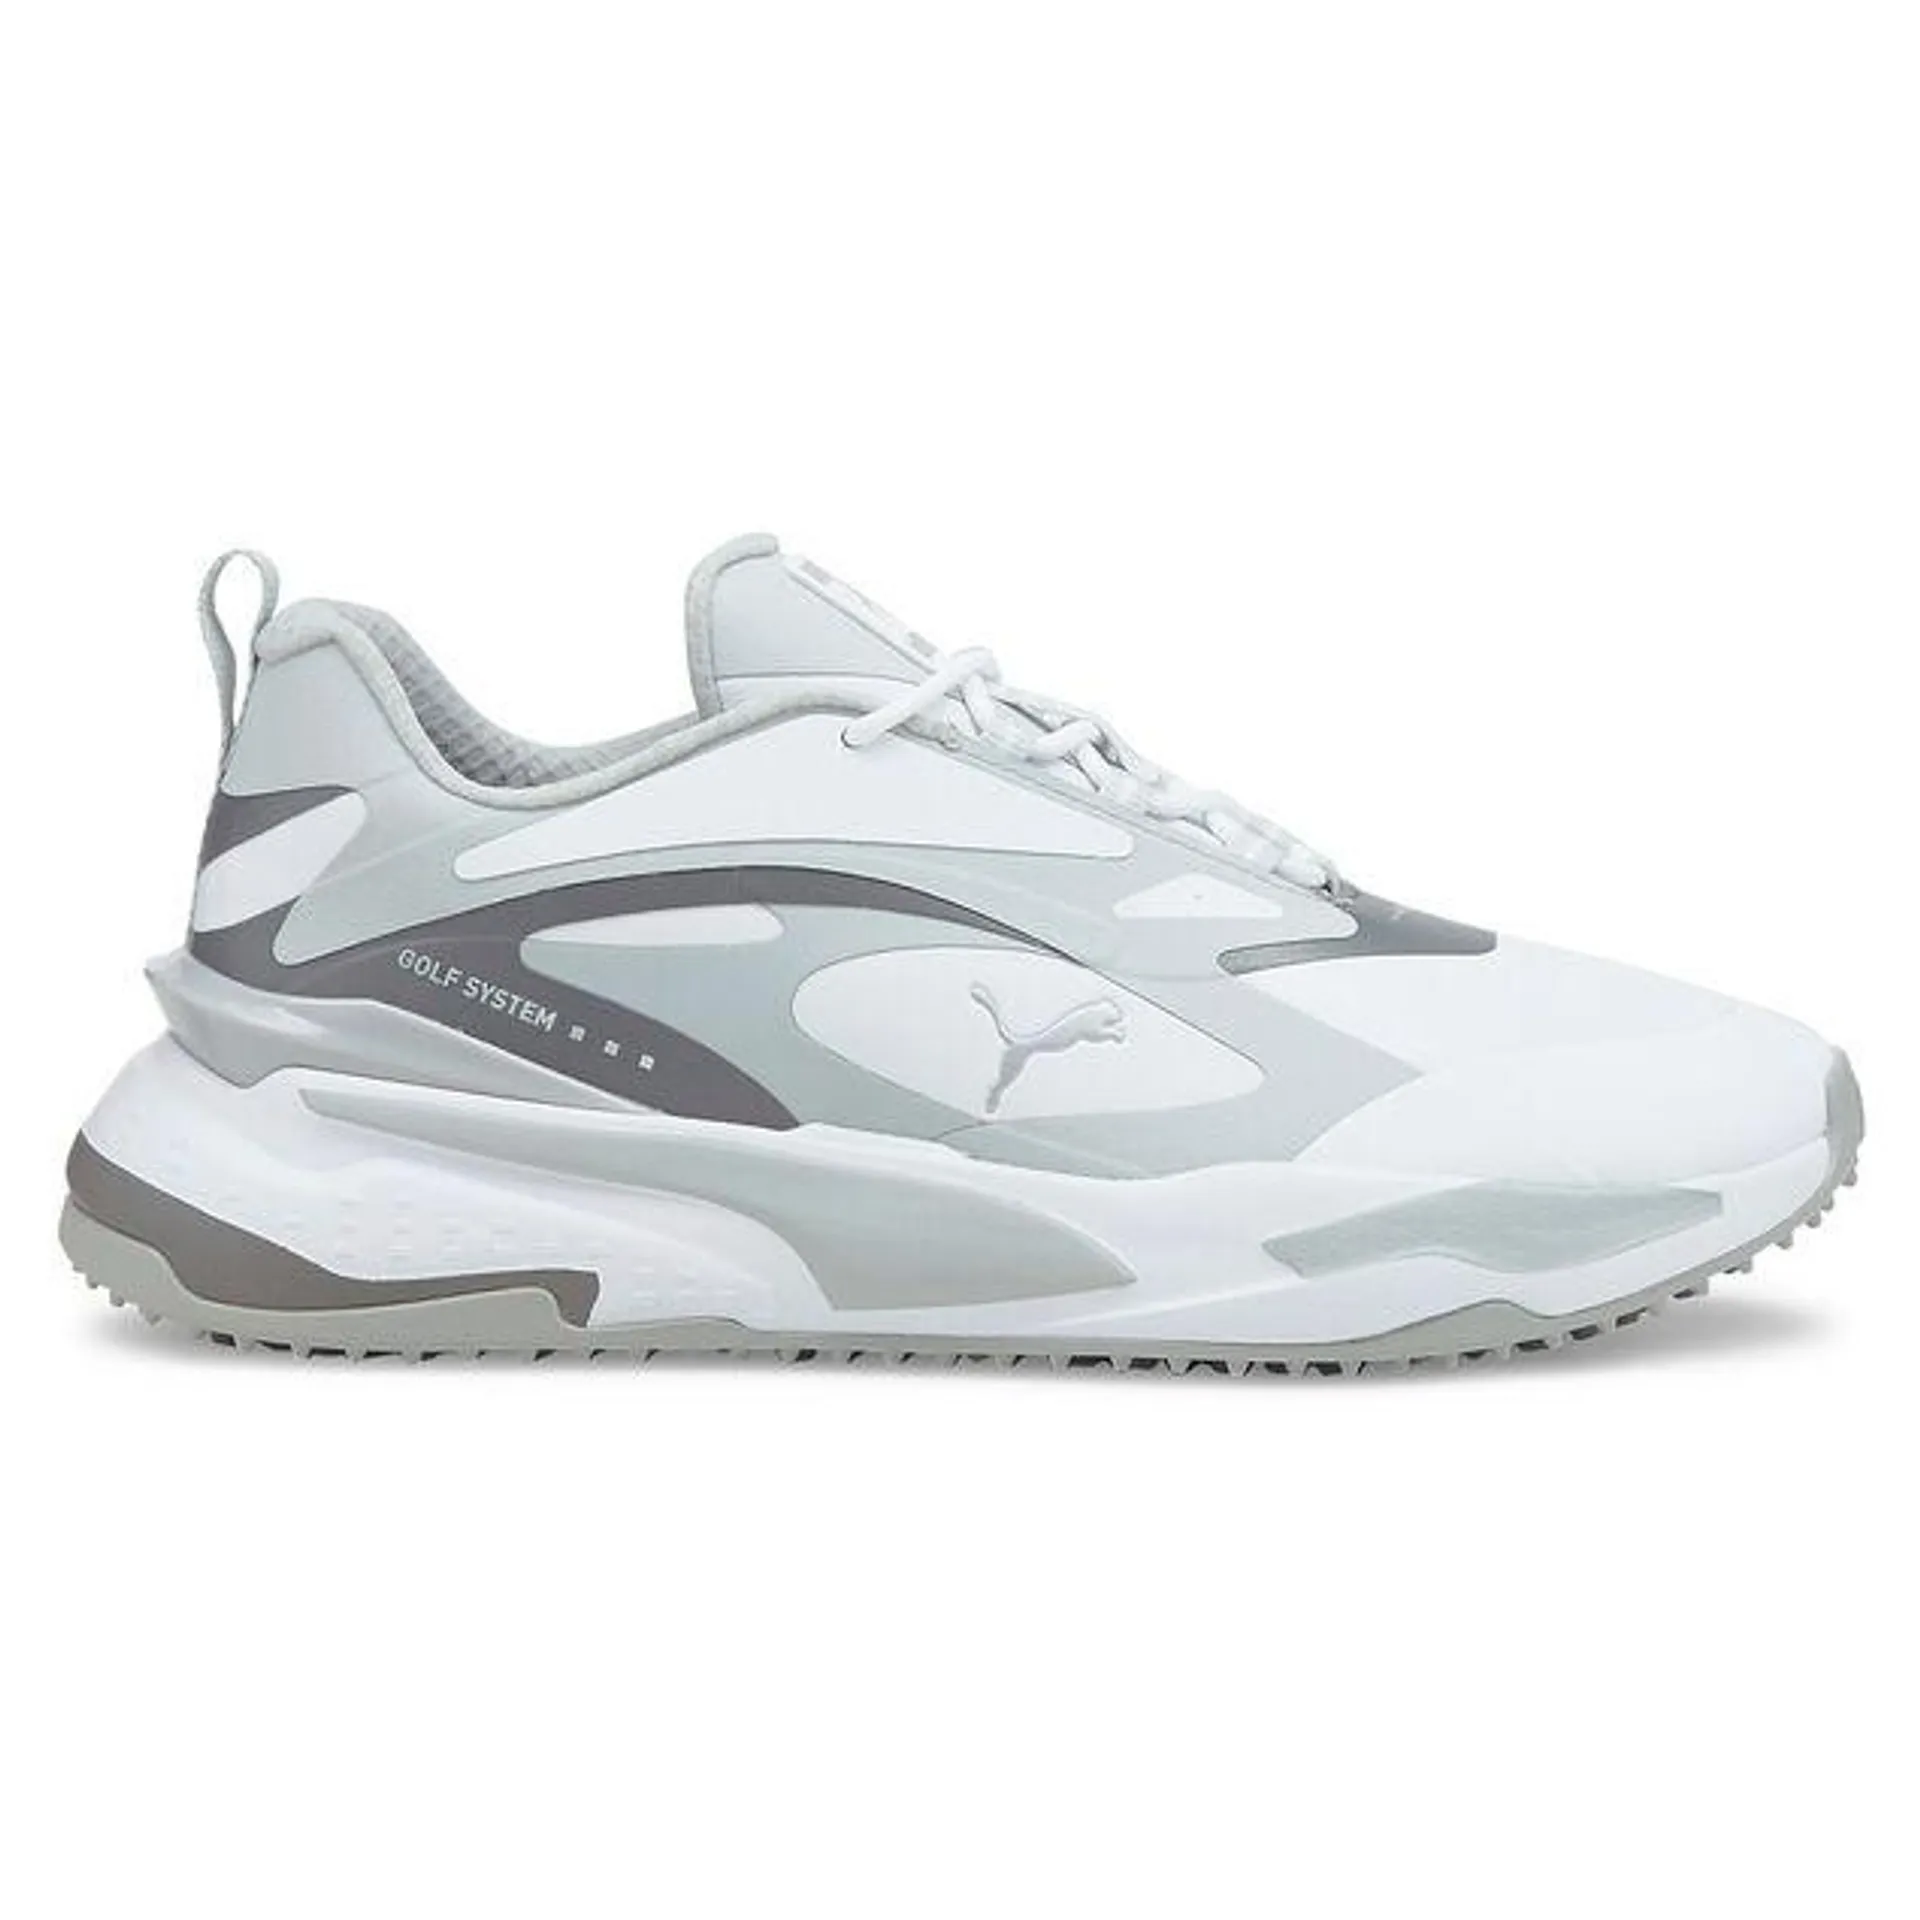 PUMA Men's GS-Fast Waterproof Spikeless Golf Shoes